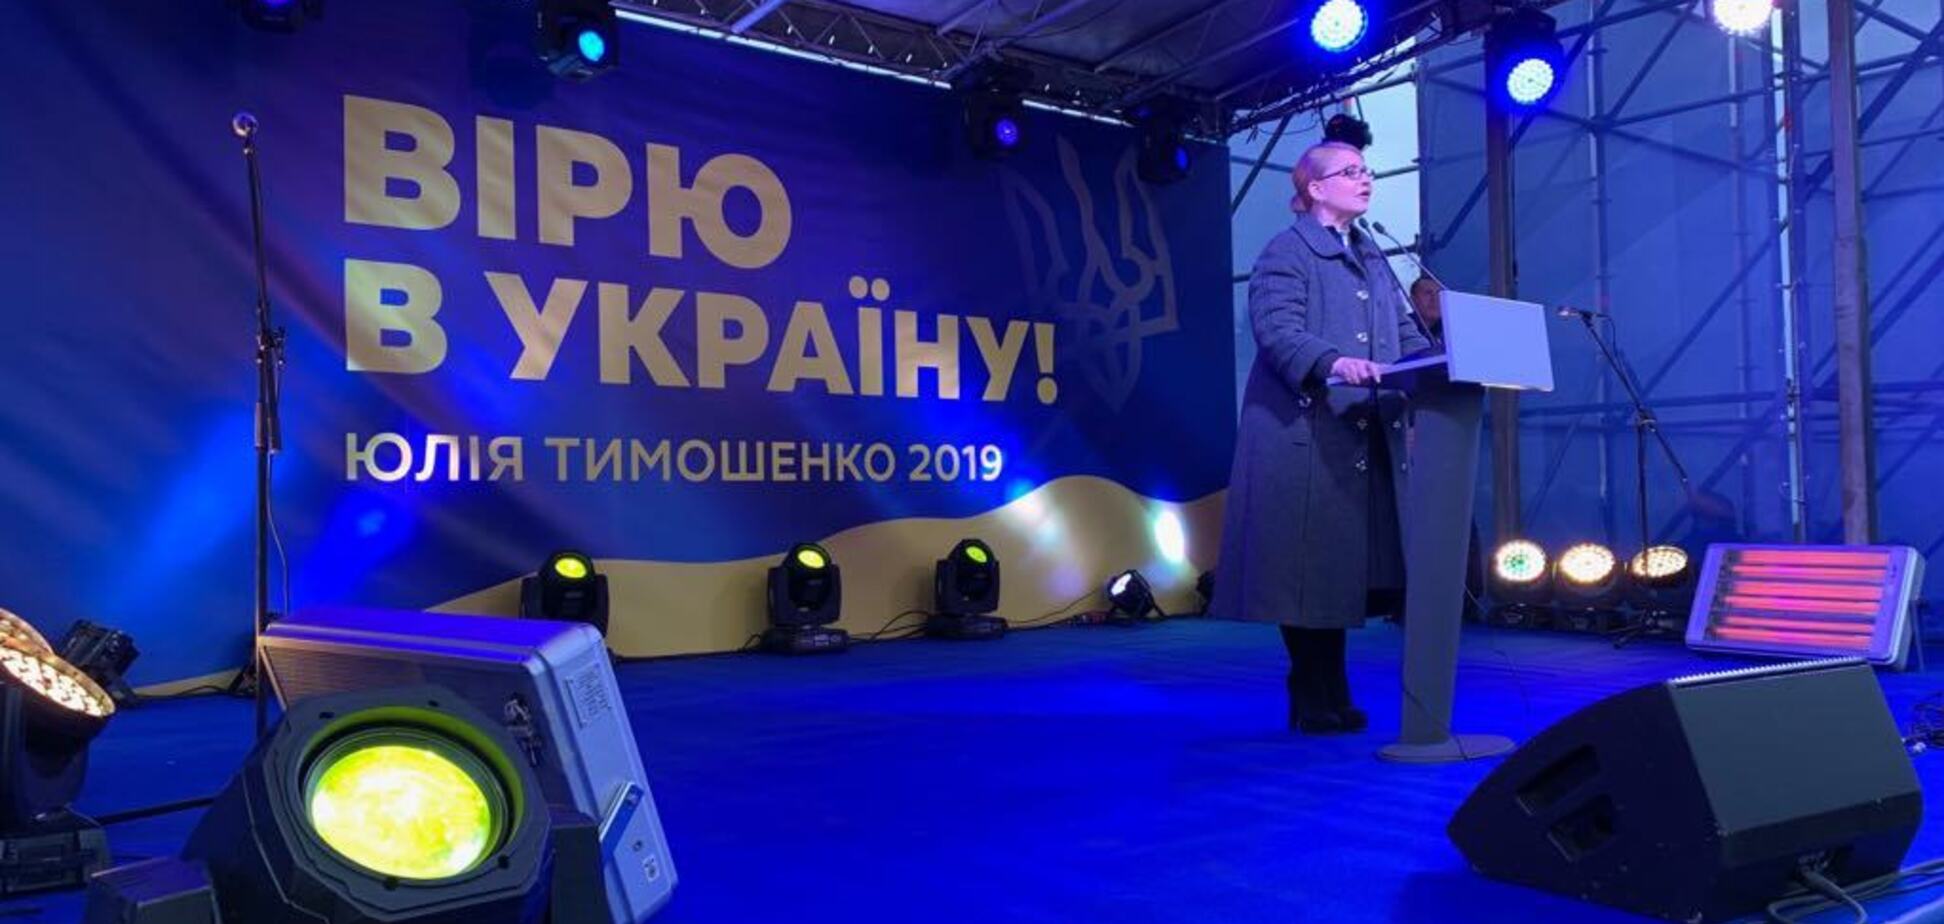  Тимошенко: 'Нинішні вибори – це шанс на реальні зміни в країні' 